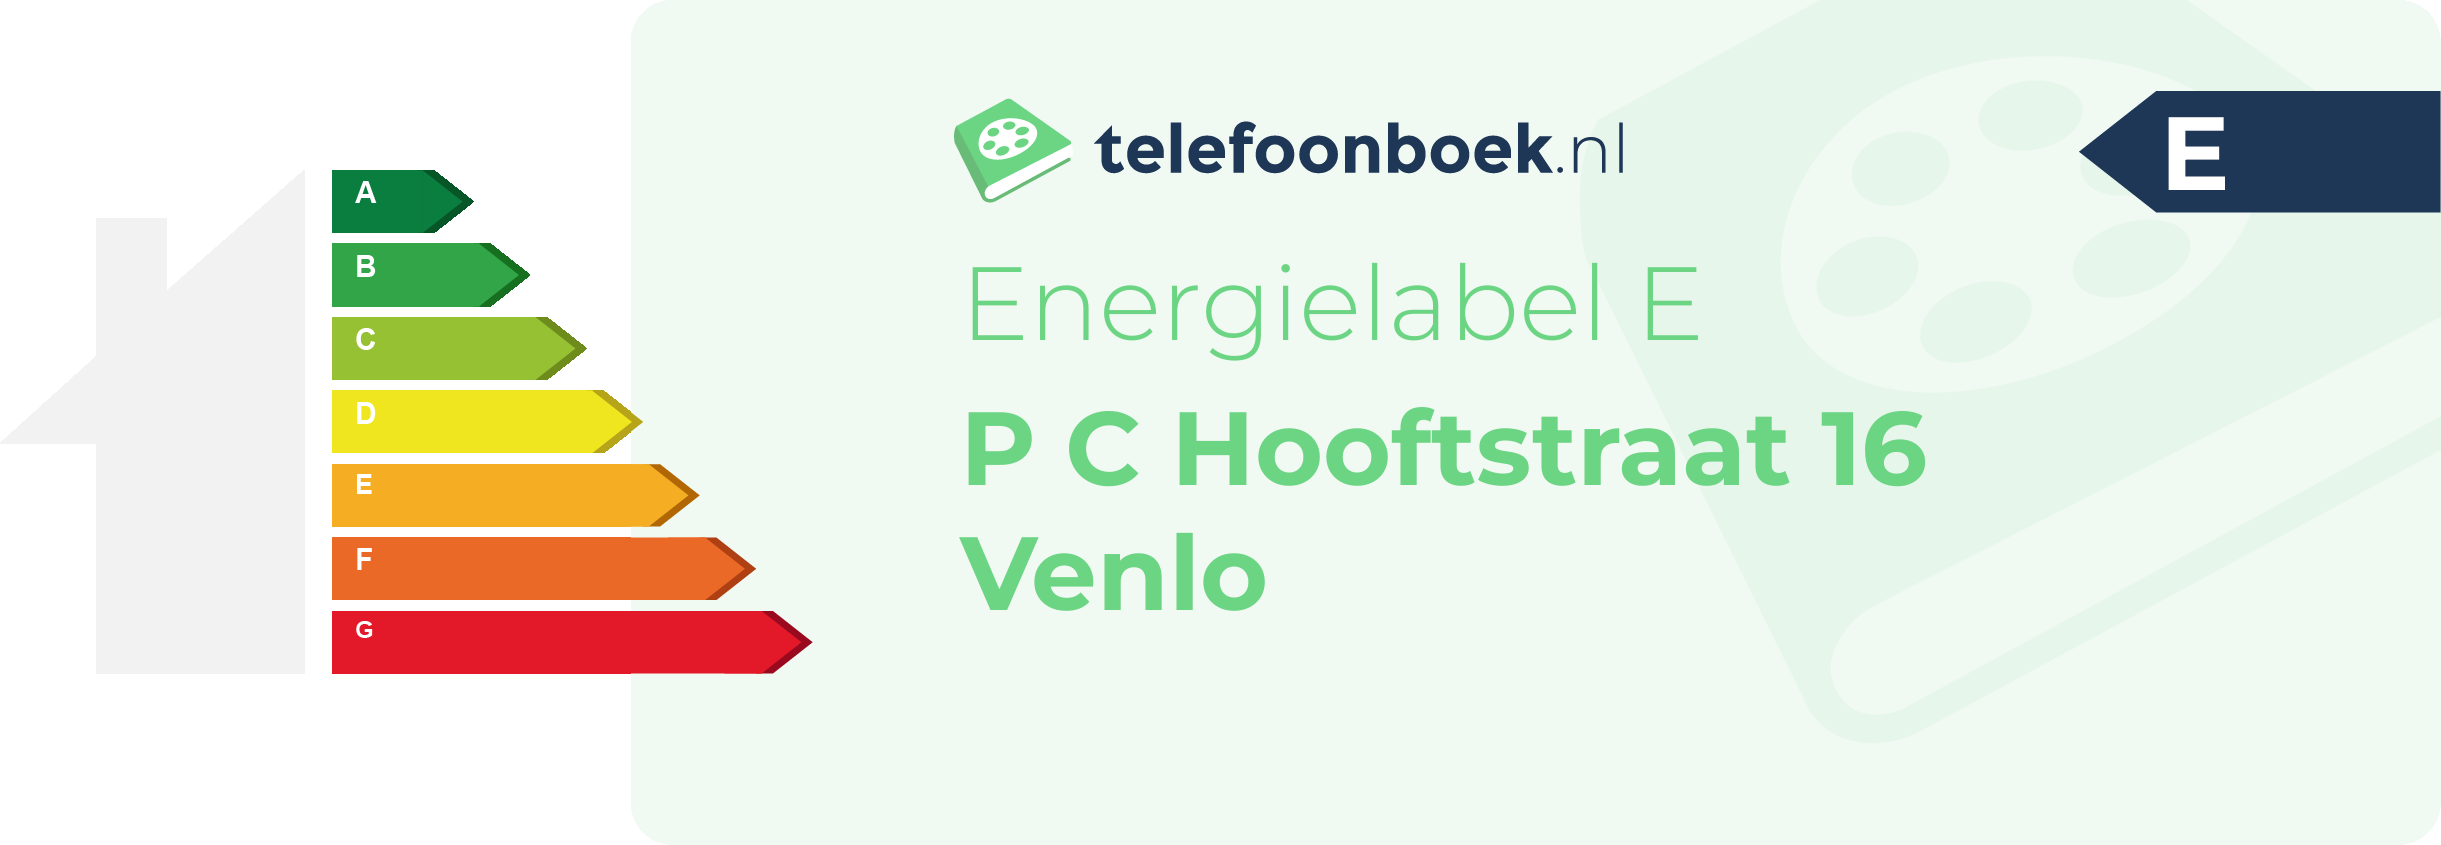 Energielabel P C Hooftstraat 16 Venlo